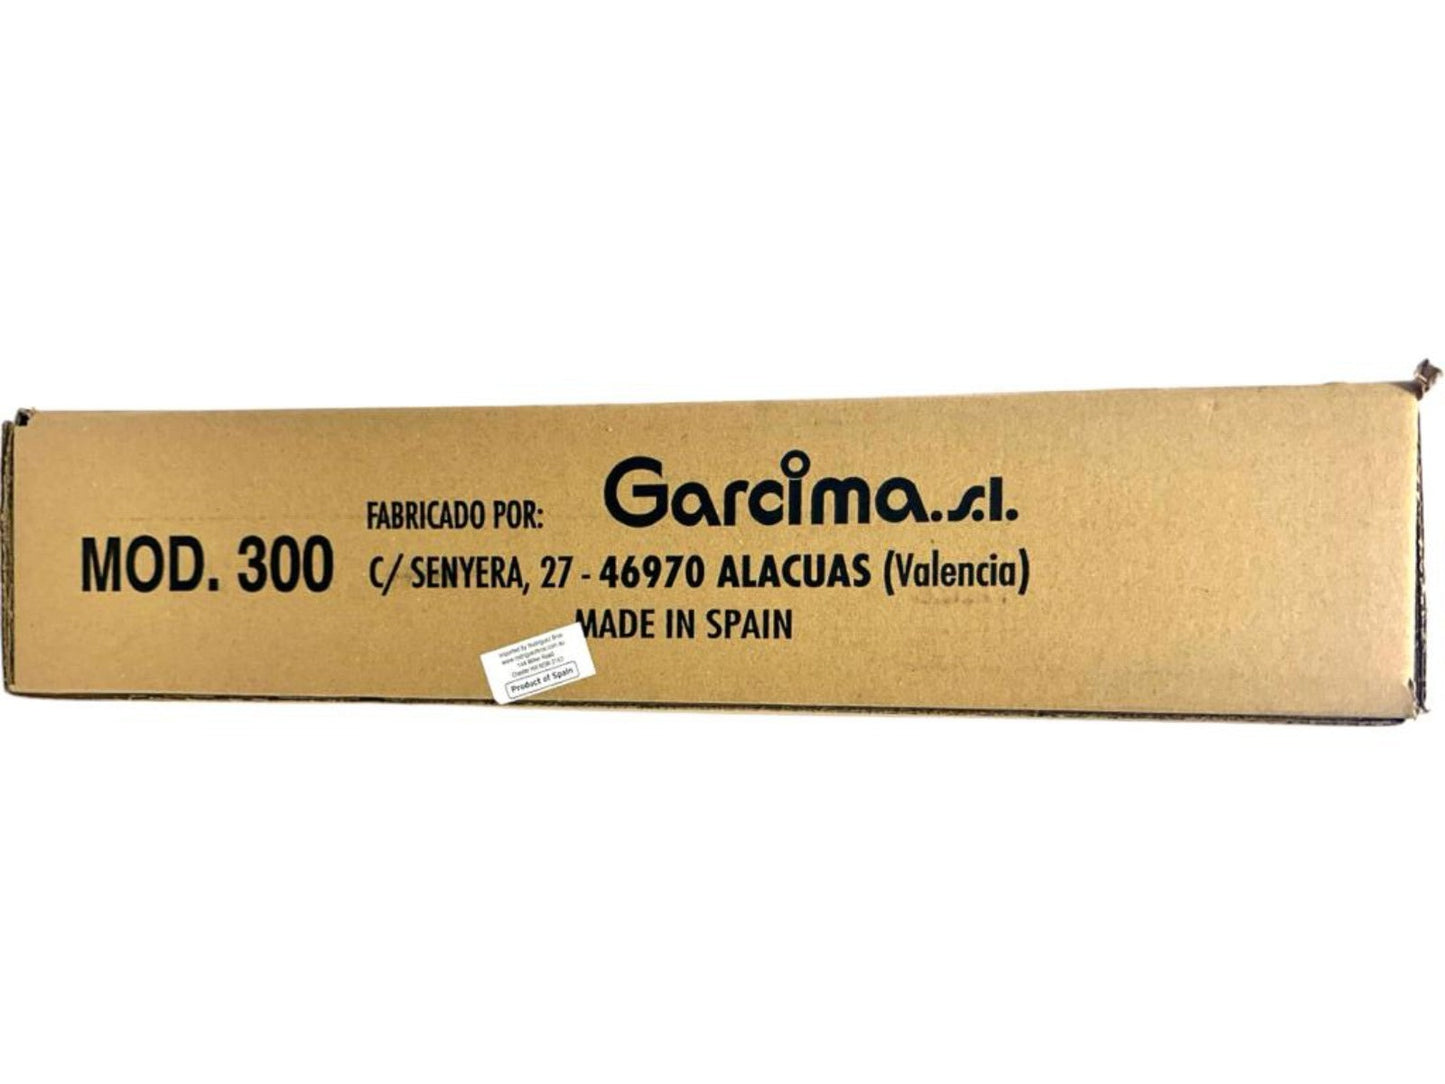 Garcima Enamel Paella Burner model 300 for 34cm pan